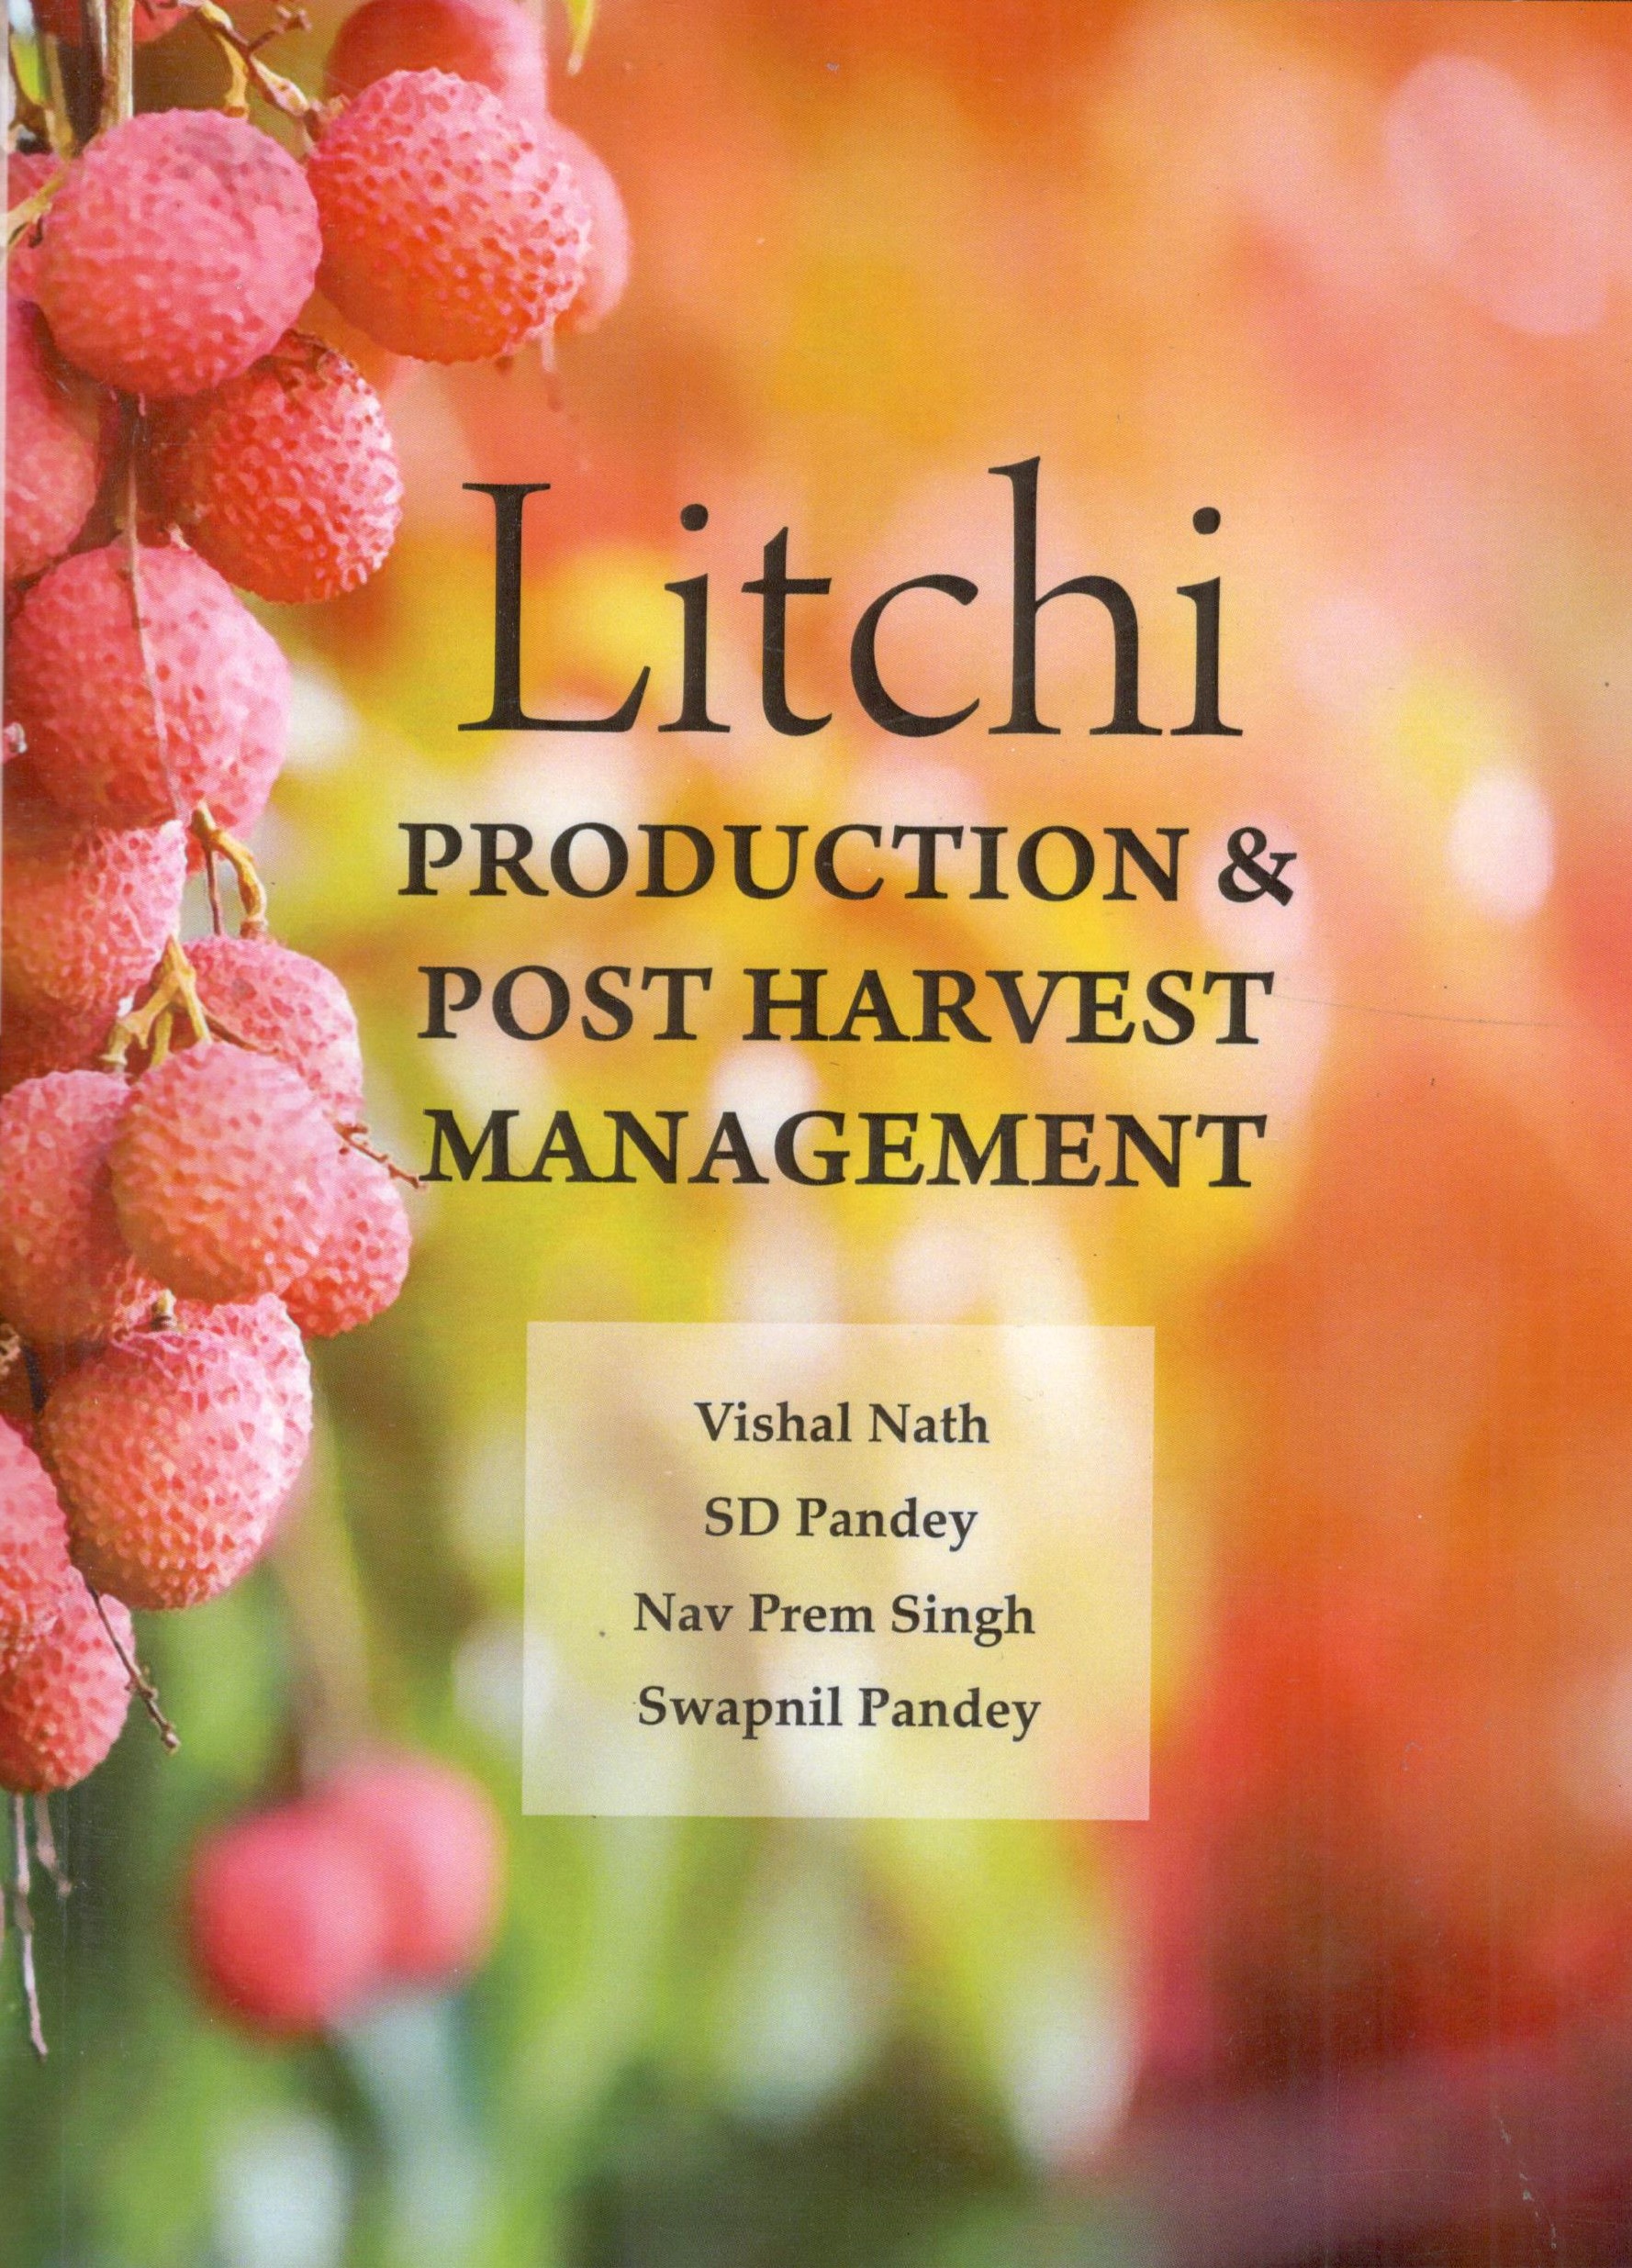 Litchi Production & Post Harvest Management